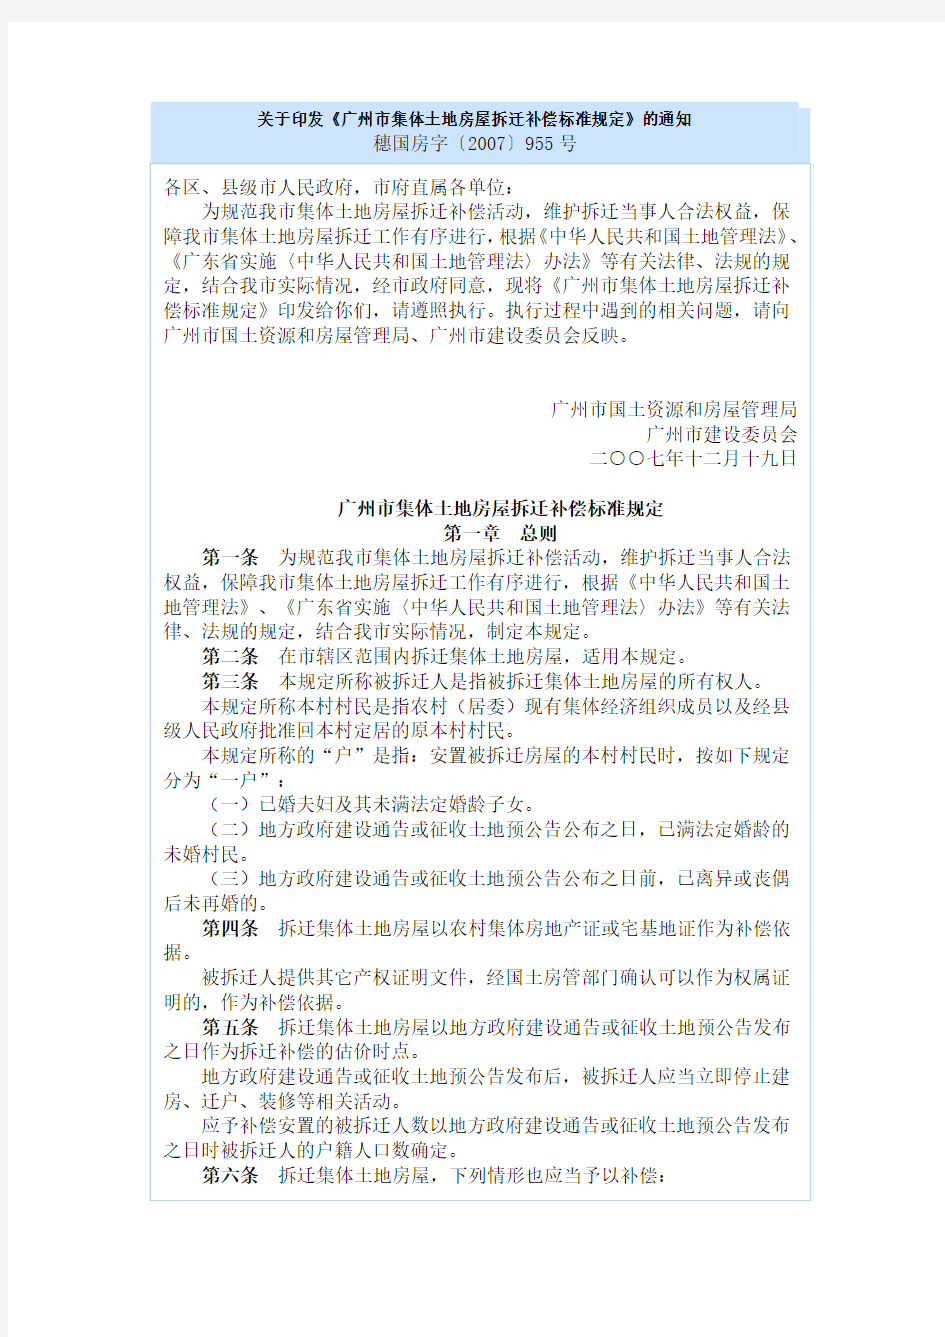 关于印发《广州市集体土地房屋拆迁补偿标准规定》的通知